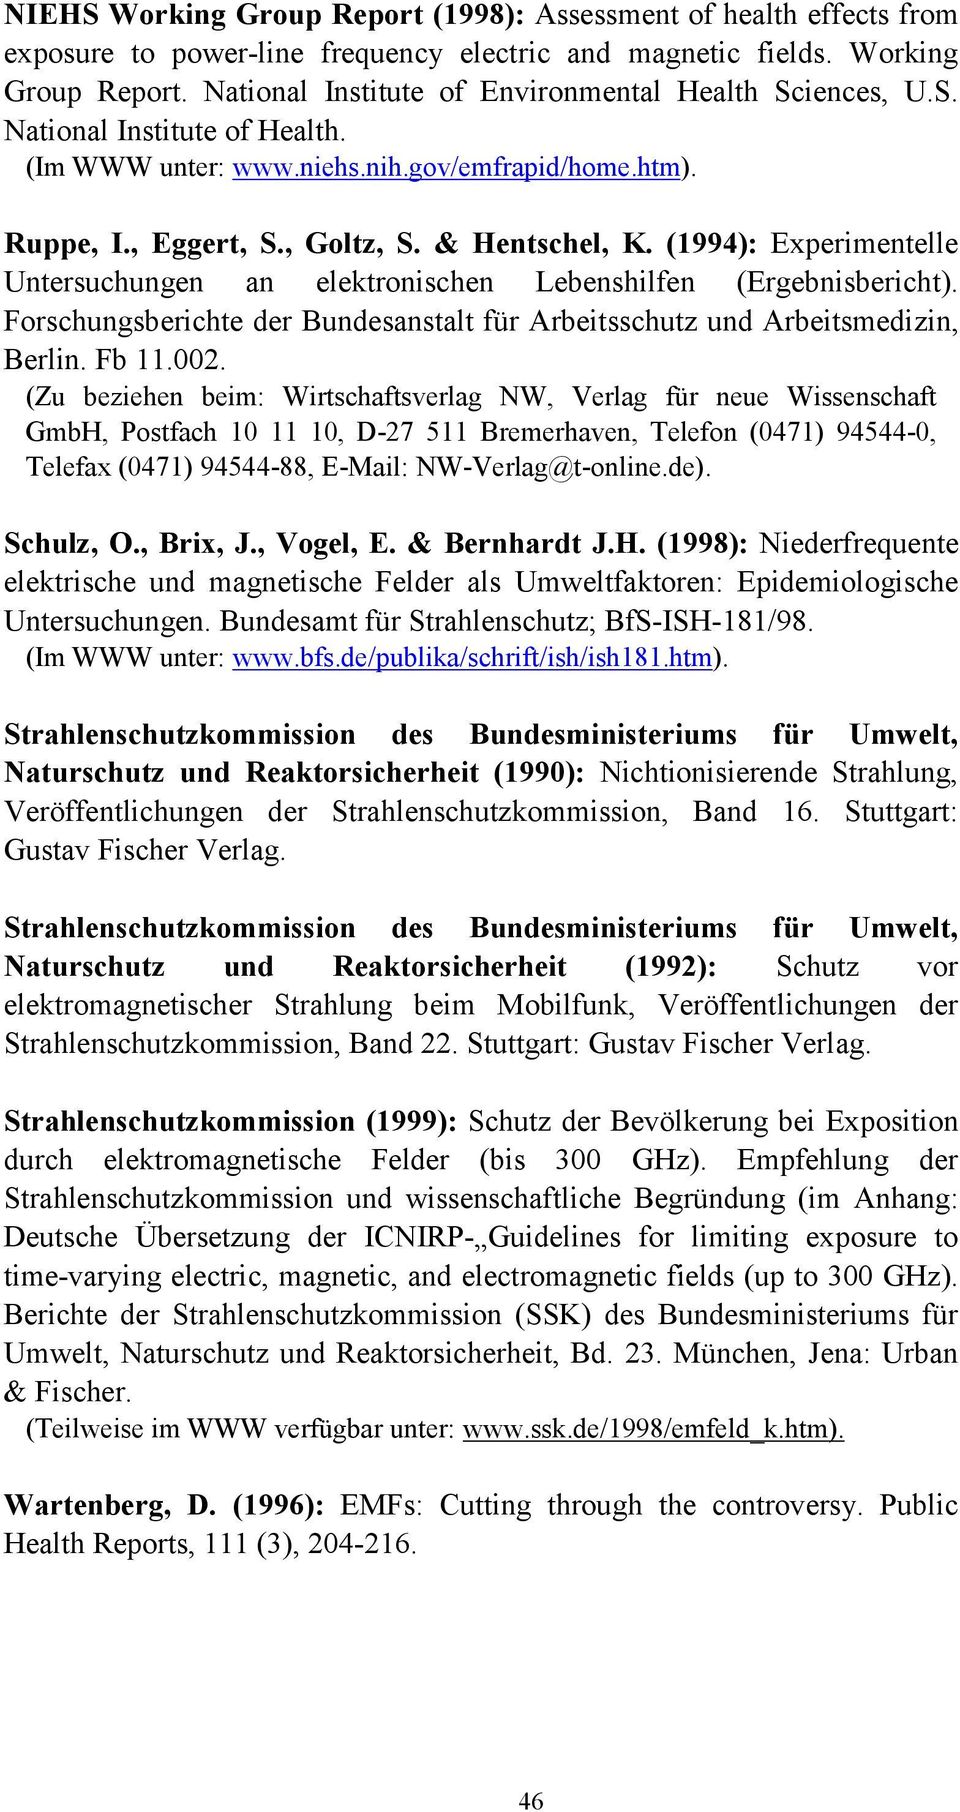 (1994): Experimentelle Untersuchungen an elektronischen Lebenshilfen (Ergebnisbericht). Forschungsberichte der Bundesanstalt für Arbeitsschutz und Arbeitsmedizin, Berlin. Fb 11.002.